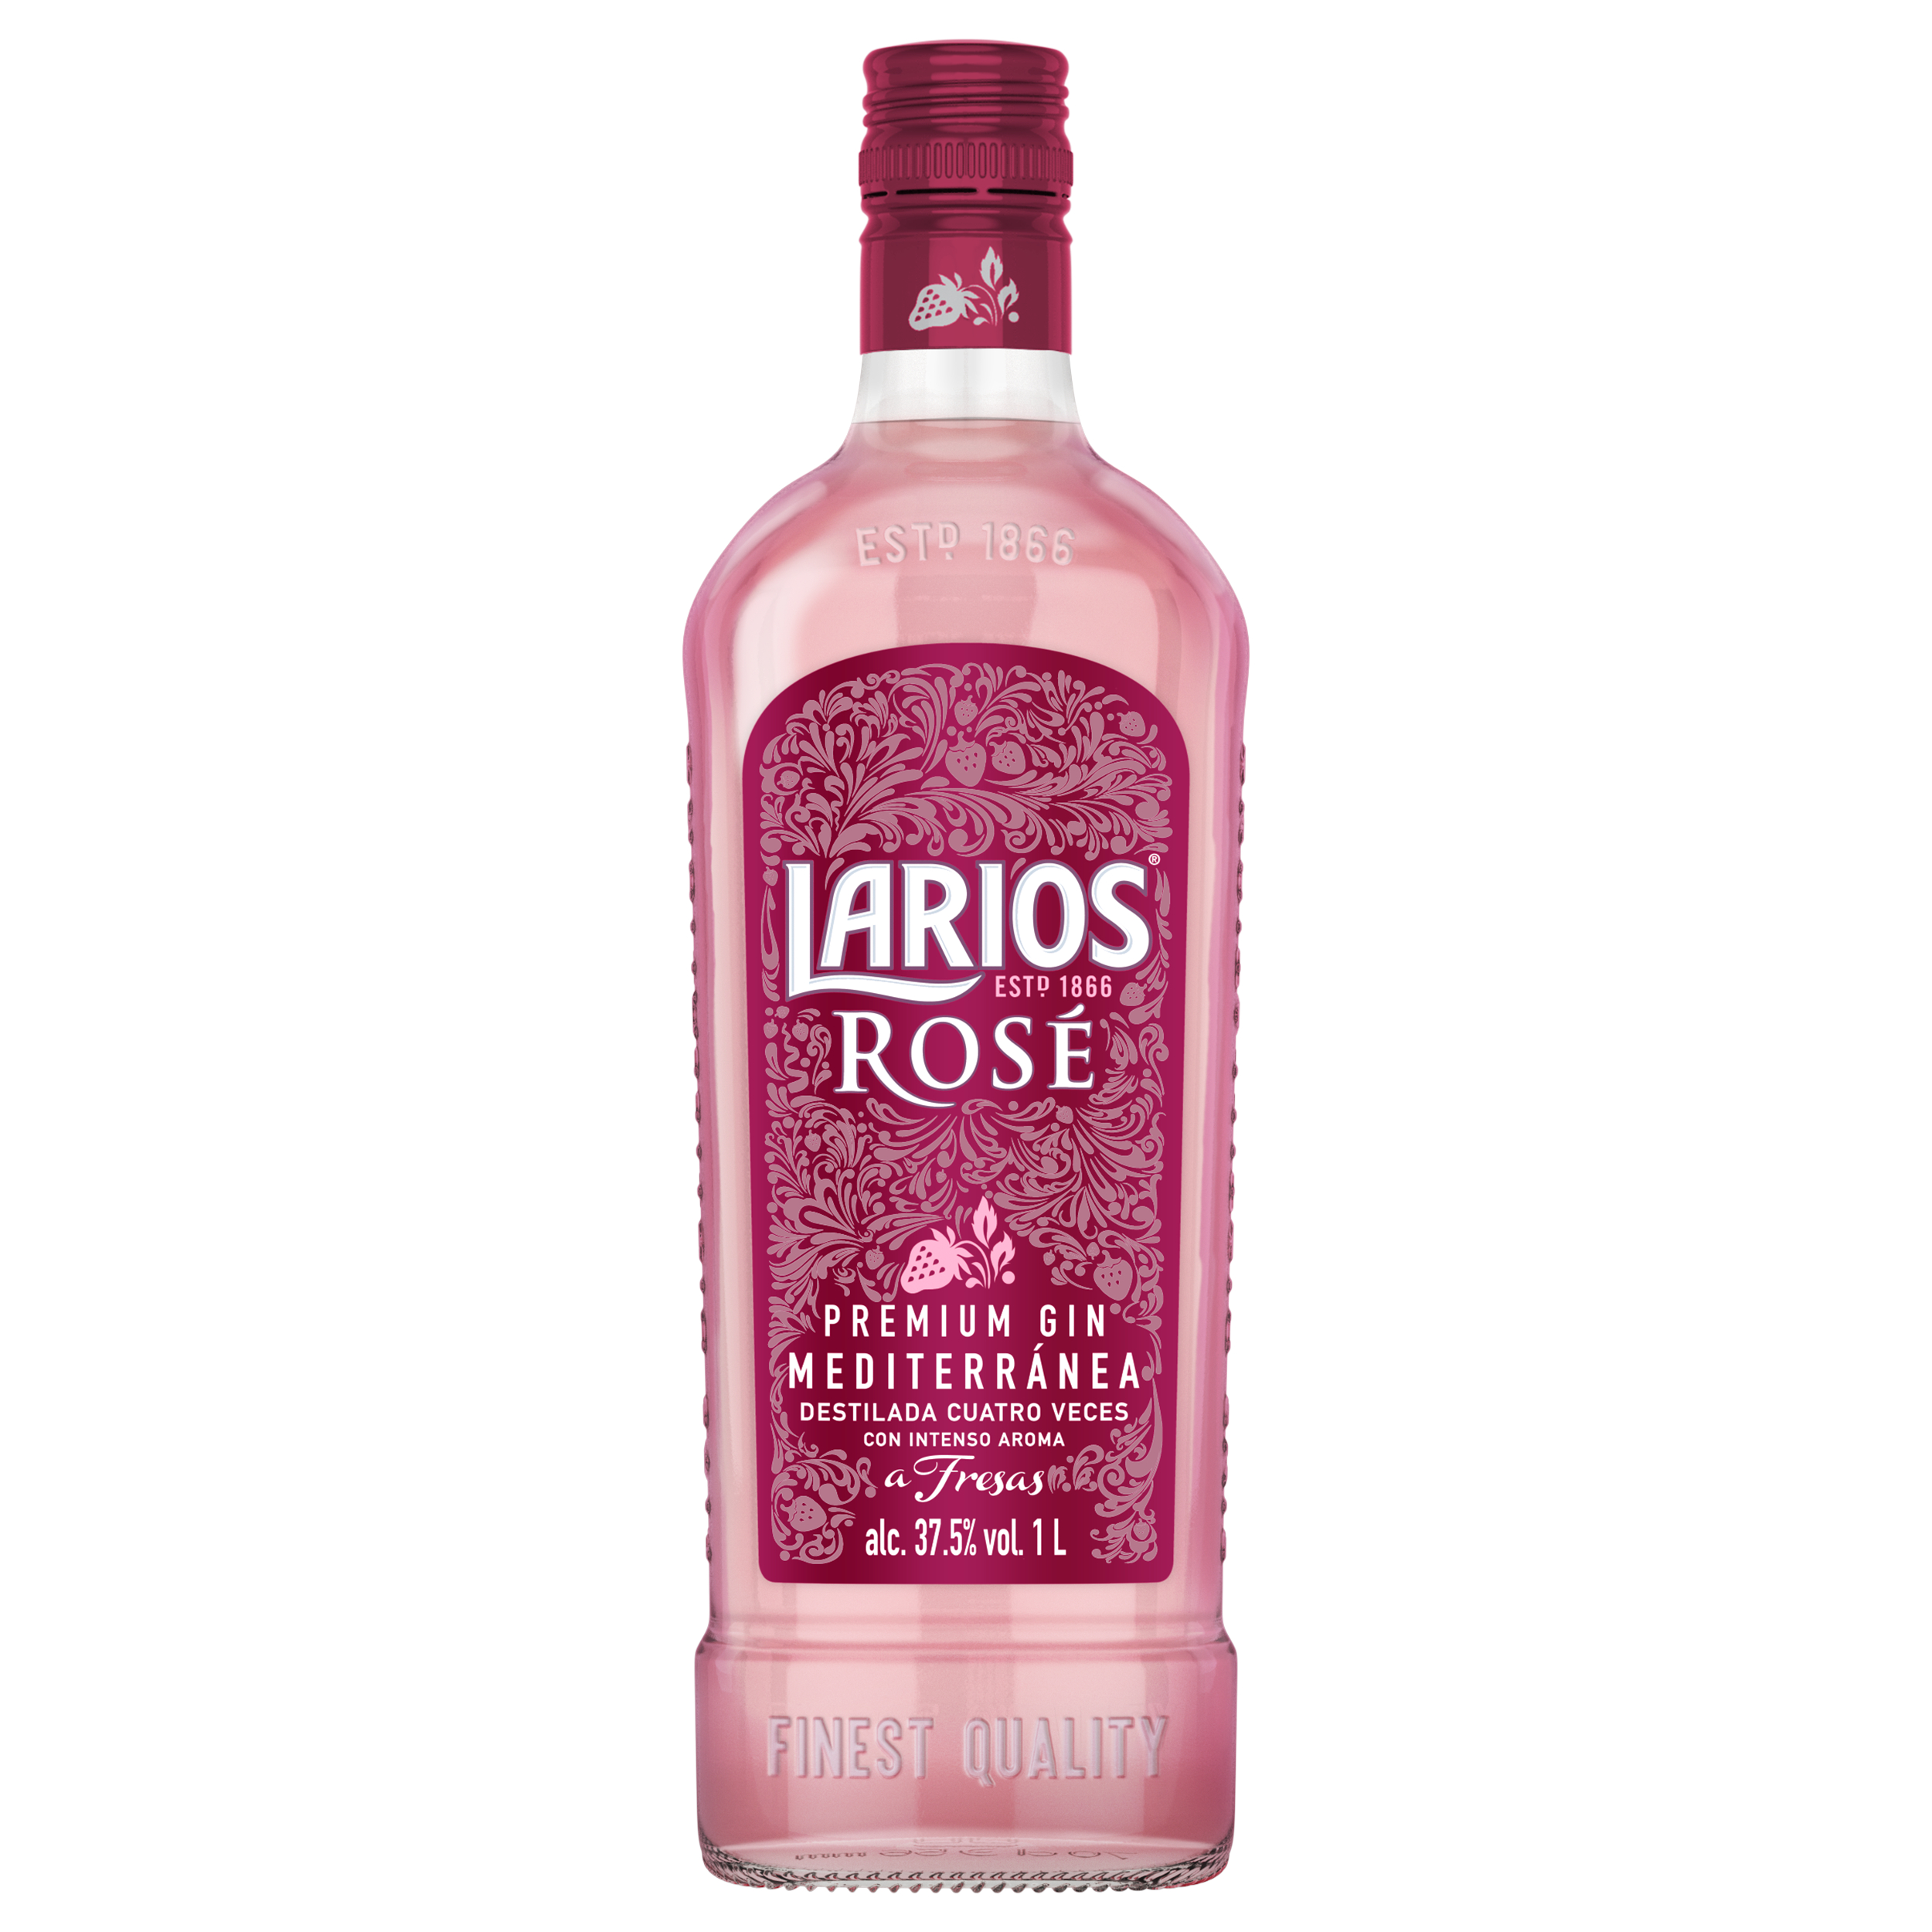 Джин Larios Rose Premium Gin, 37%, 1 л - фото 1